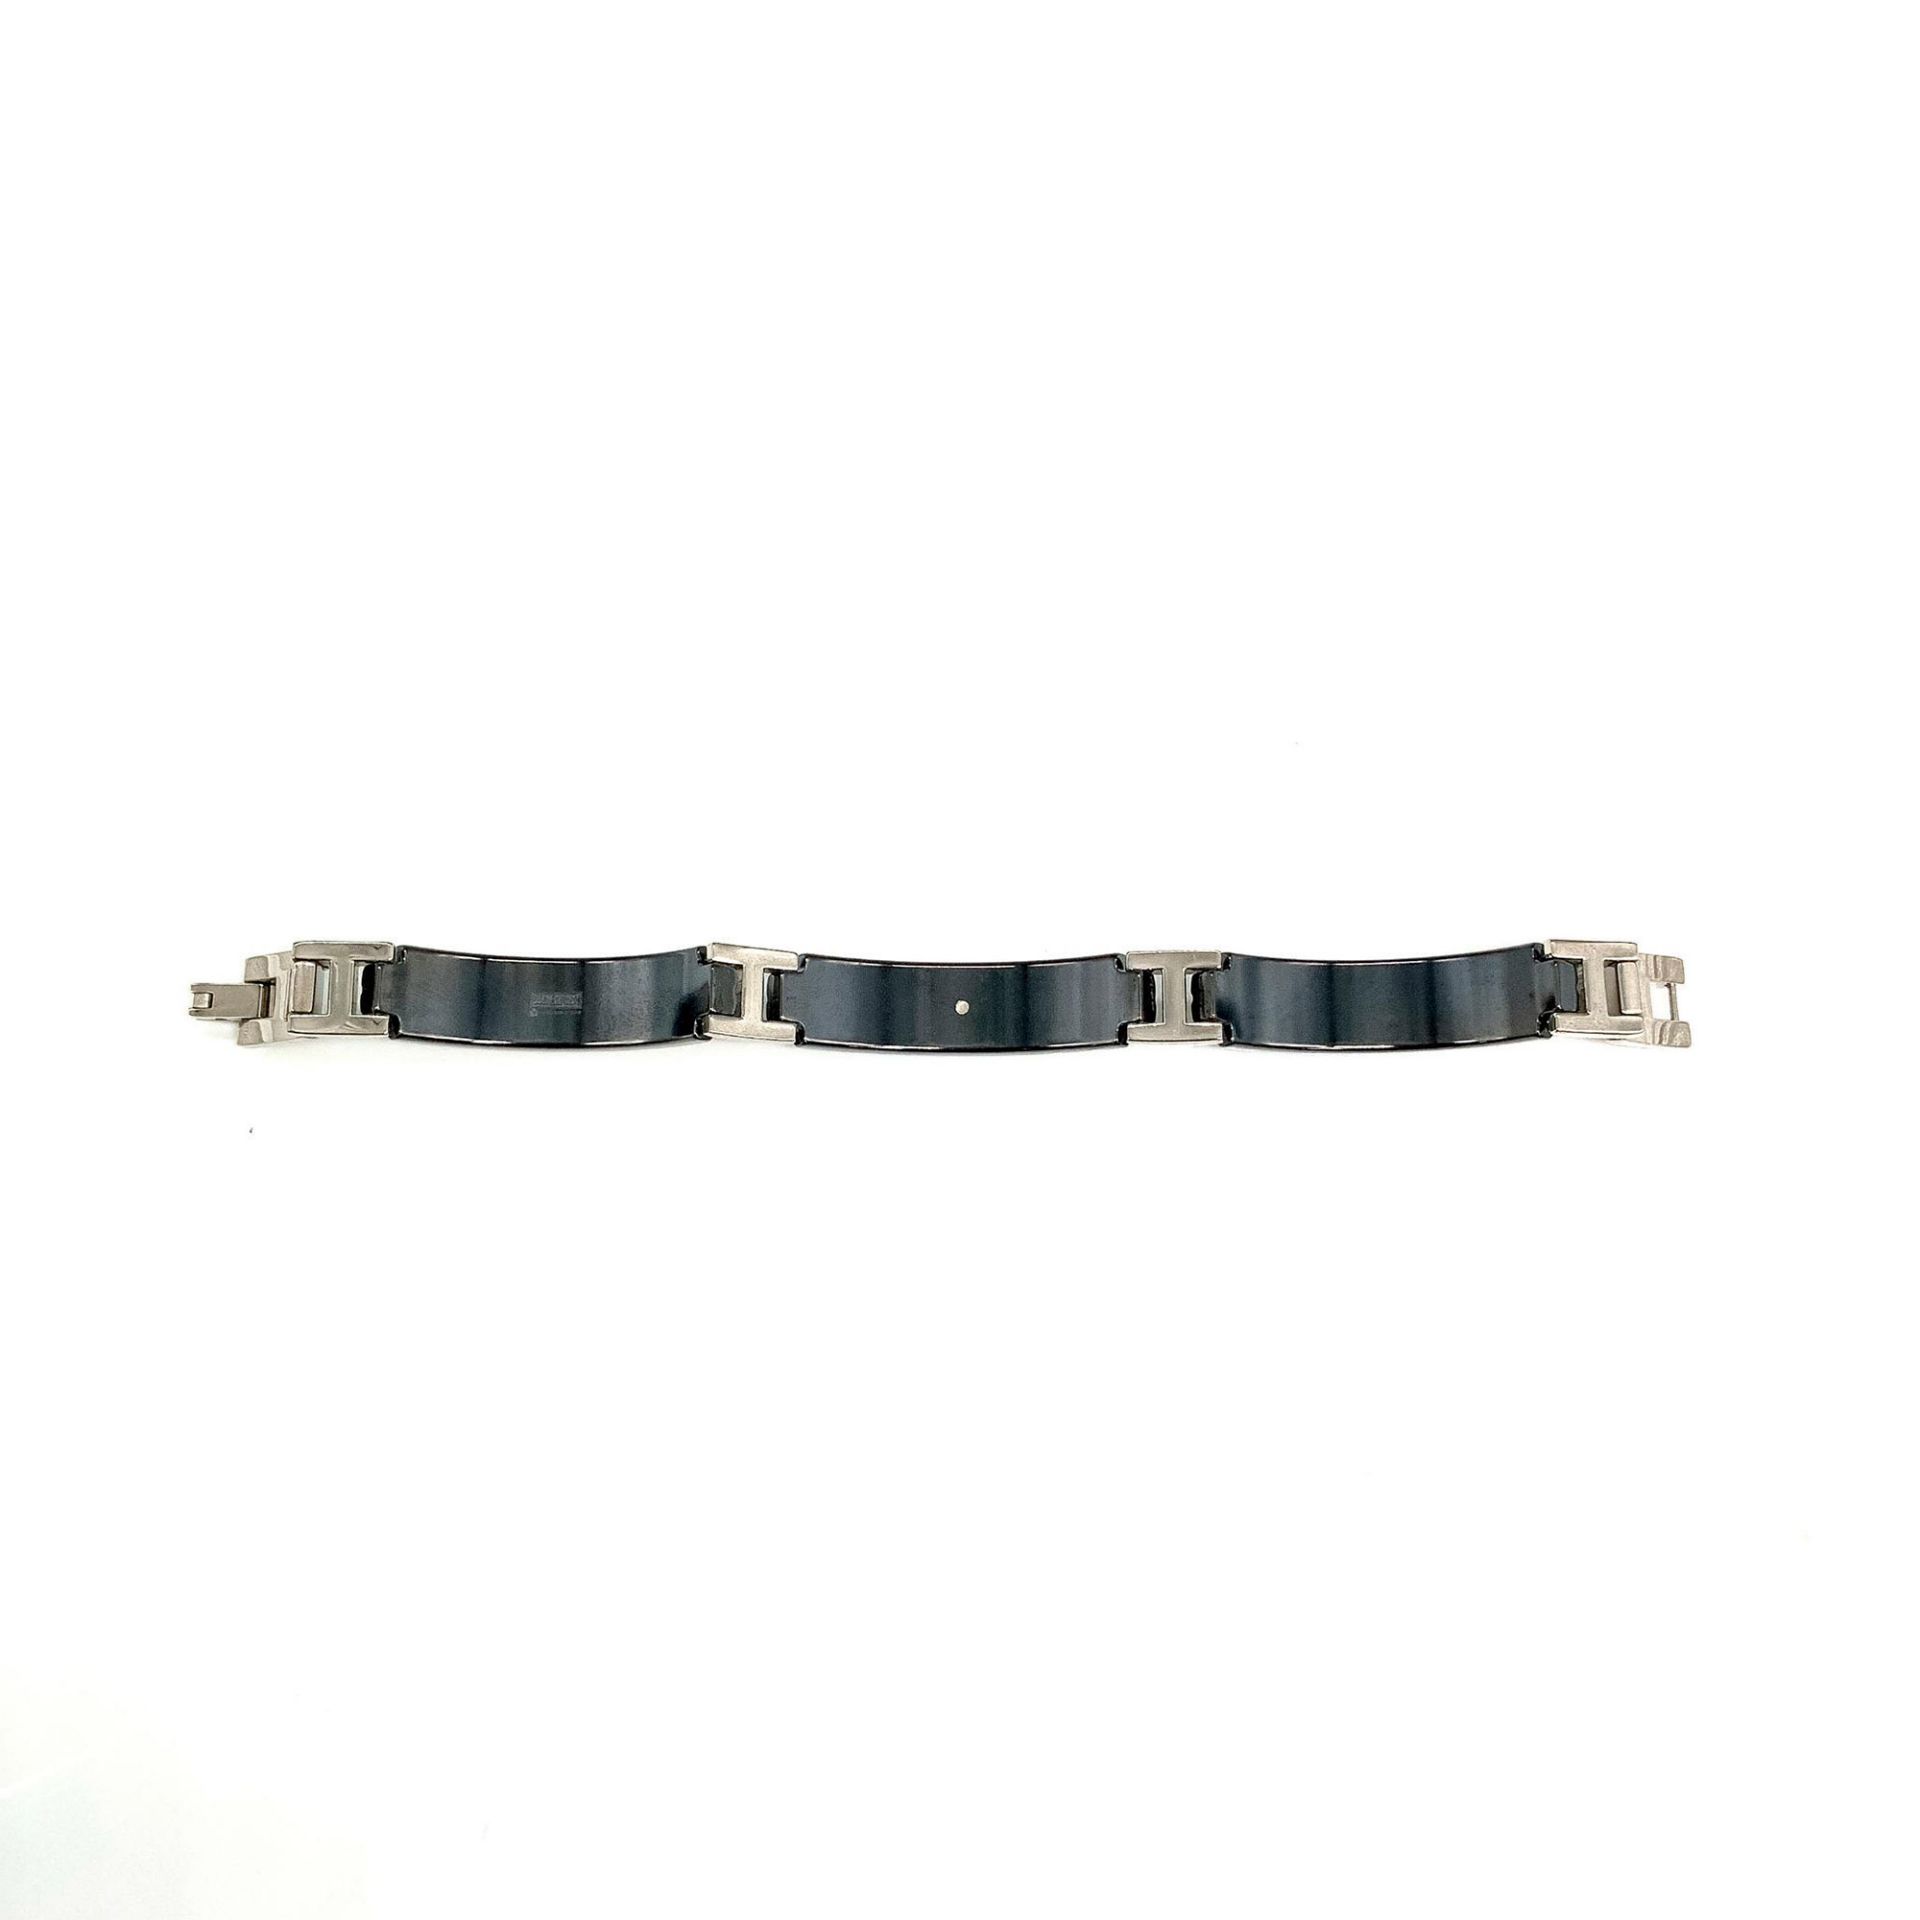 Harley Davidson Black and Silver Titanium Link Bracelet - Image 3 of 3